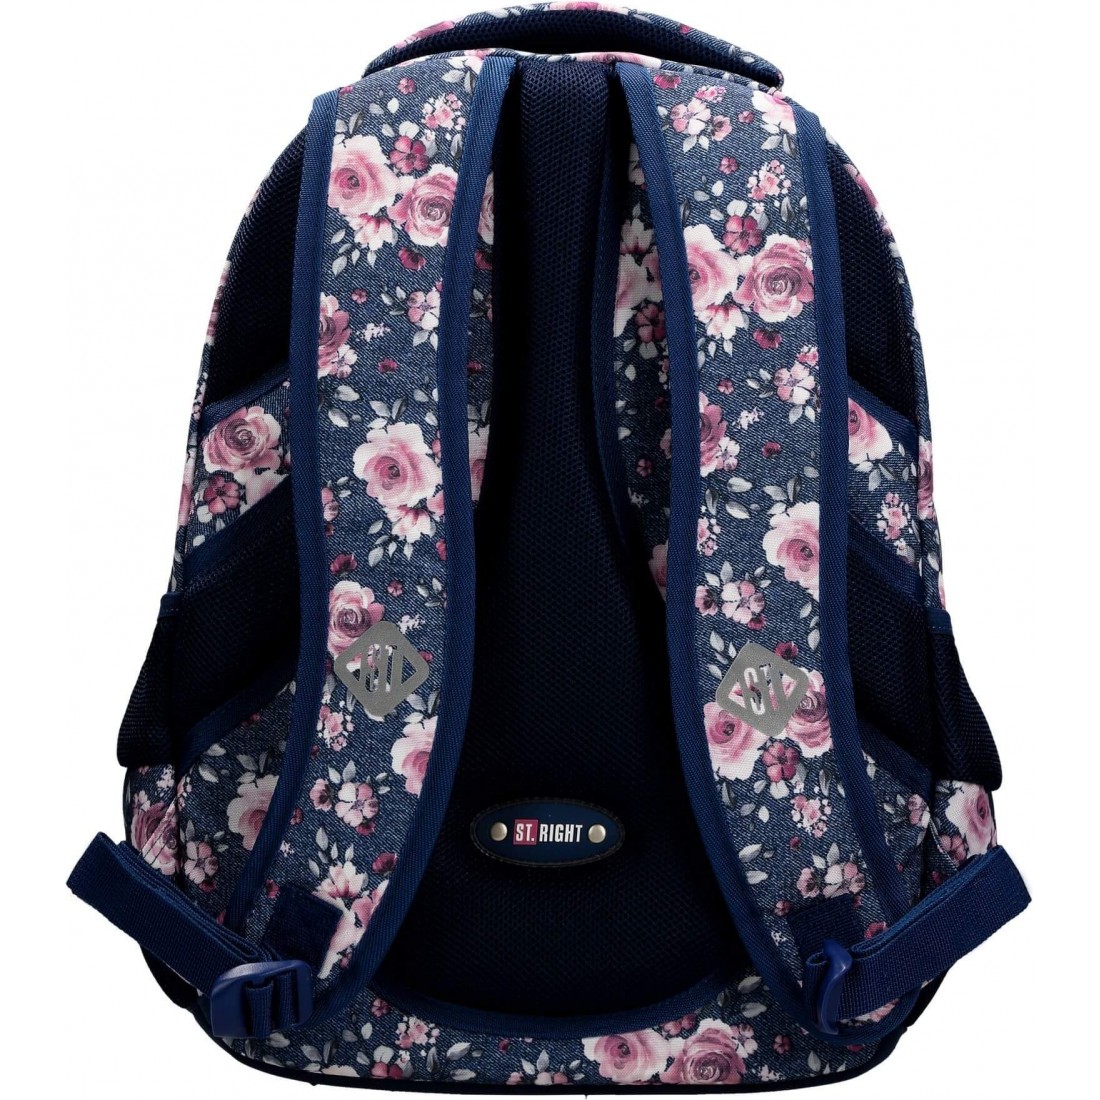 Plecak do szkoły dla uczennicy róże kwiaty ST.RIGHT ROSES BP32 jeans ST.Majewski - plecak-tornister.pl